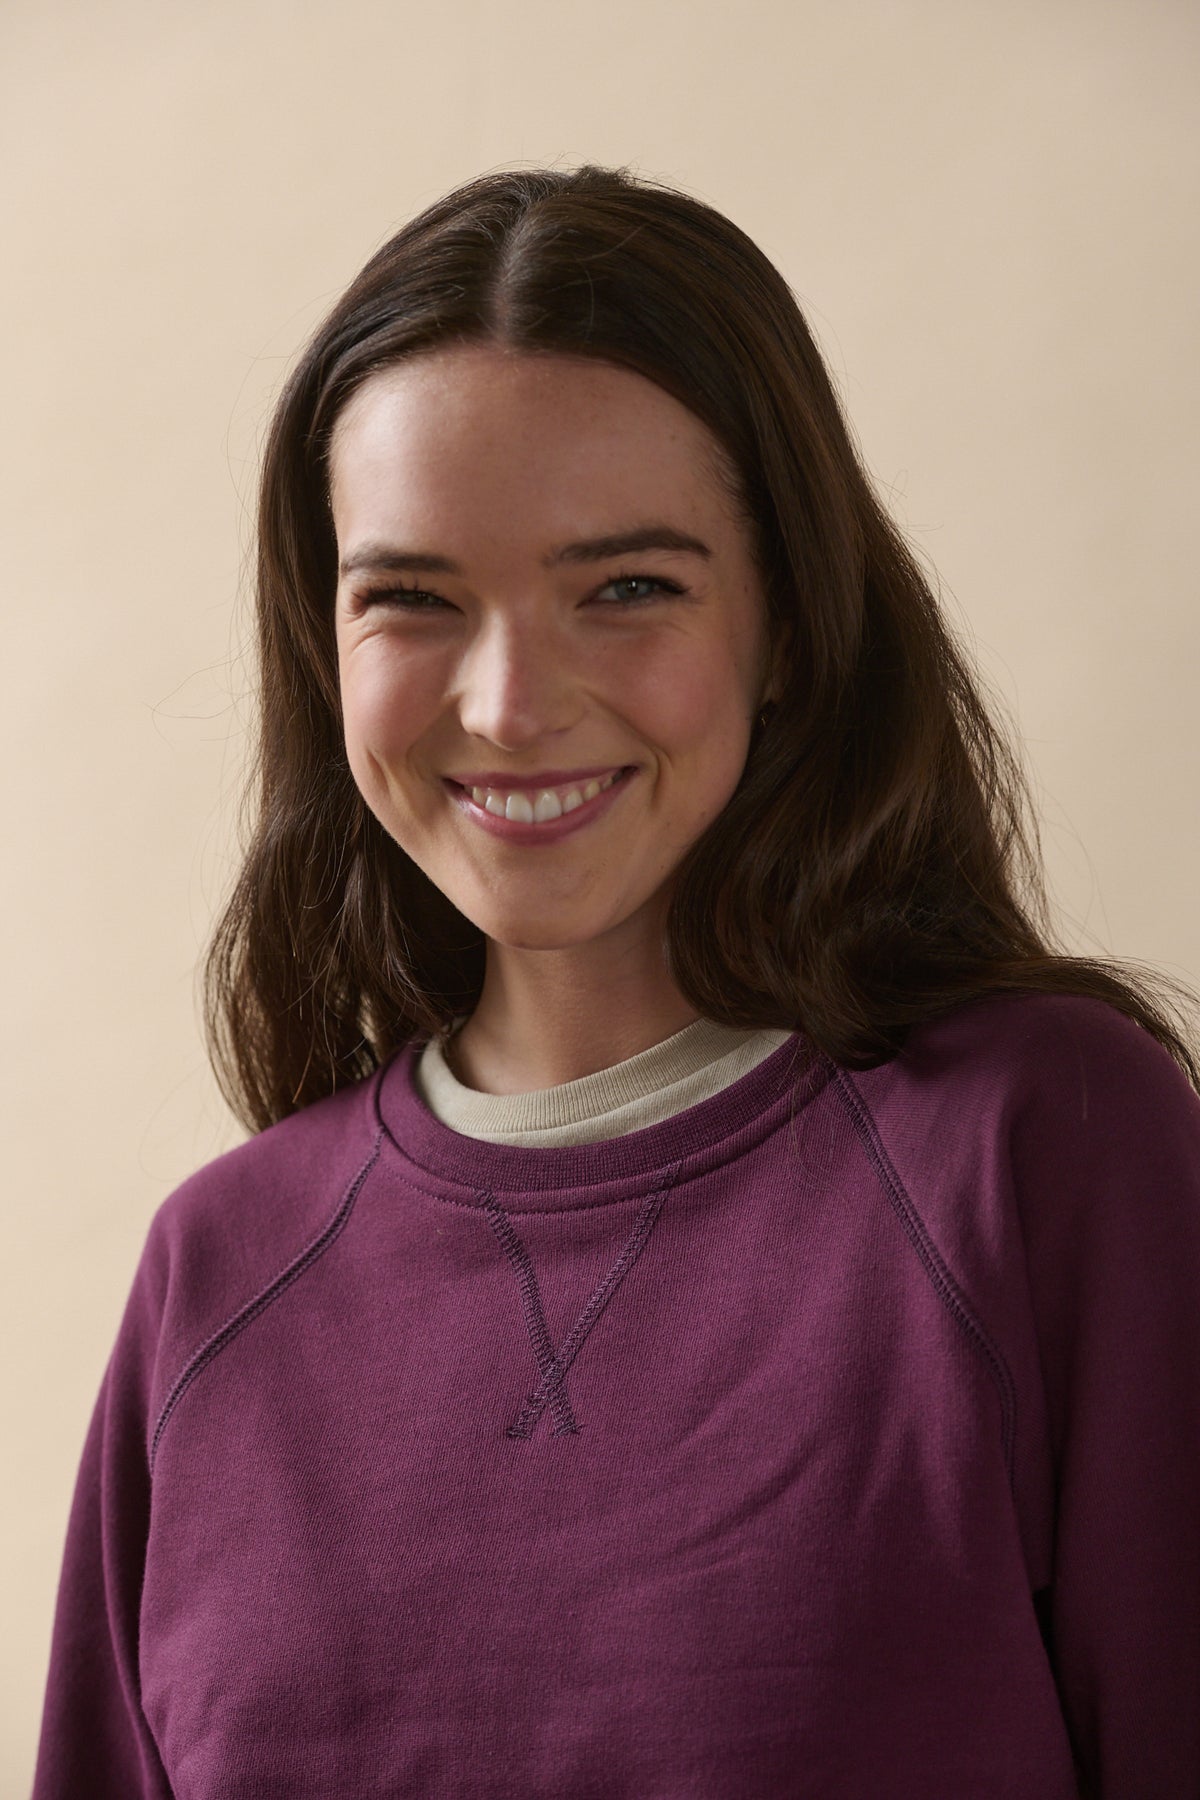 
            Smiley portrait of brunette female wearing raglan sweatshirt in plum